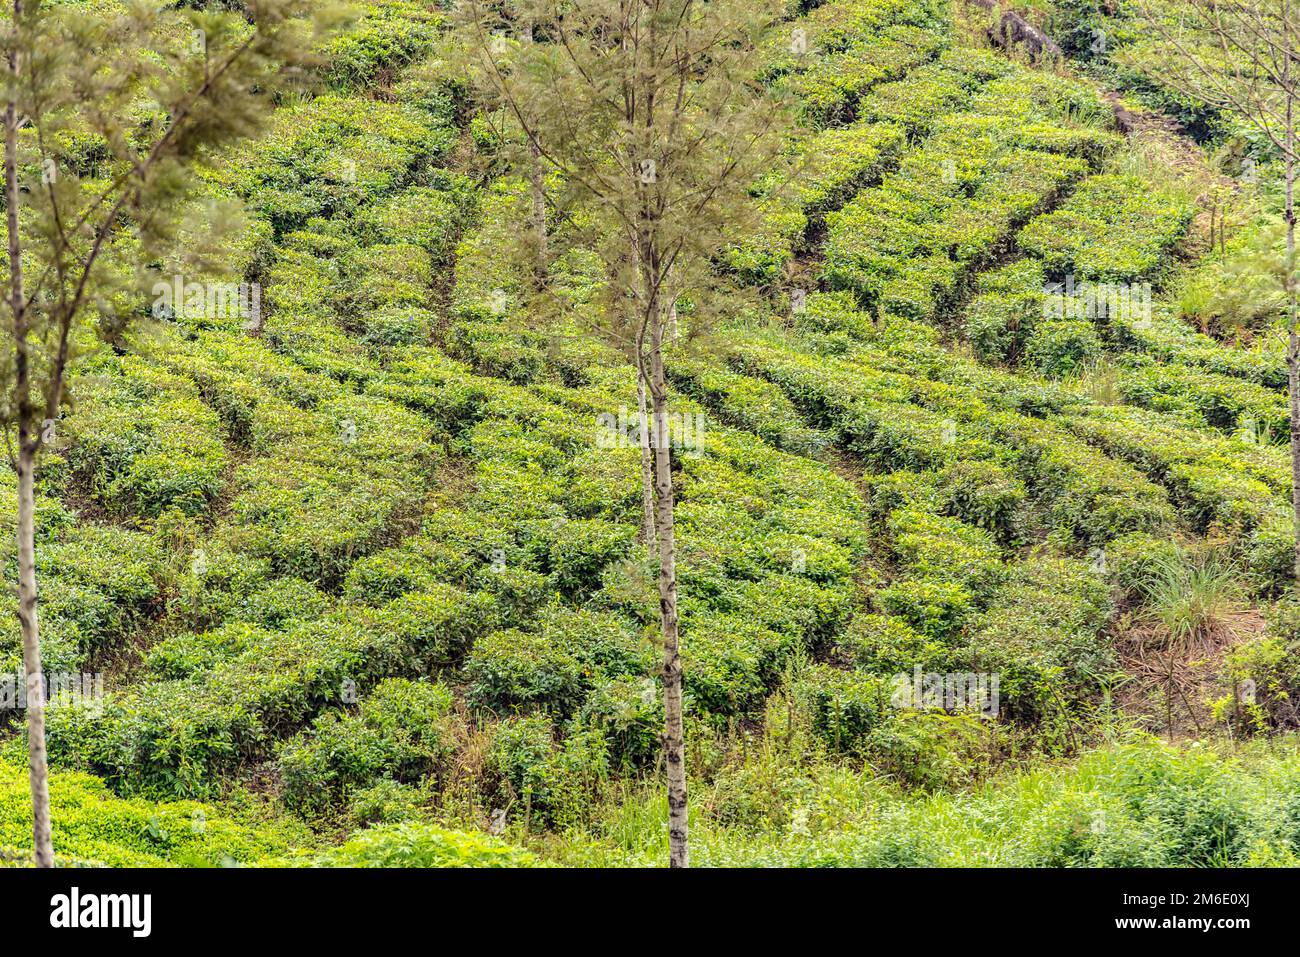 Haputale, Sri Lanka - 23. november 2019: Teefabrik in Teeplantage in der Nähe von Haputale. Sri Lanka. Stockfoto